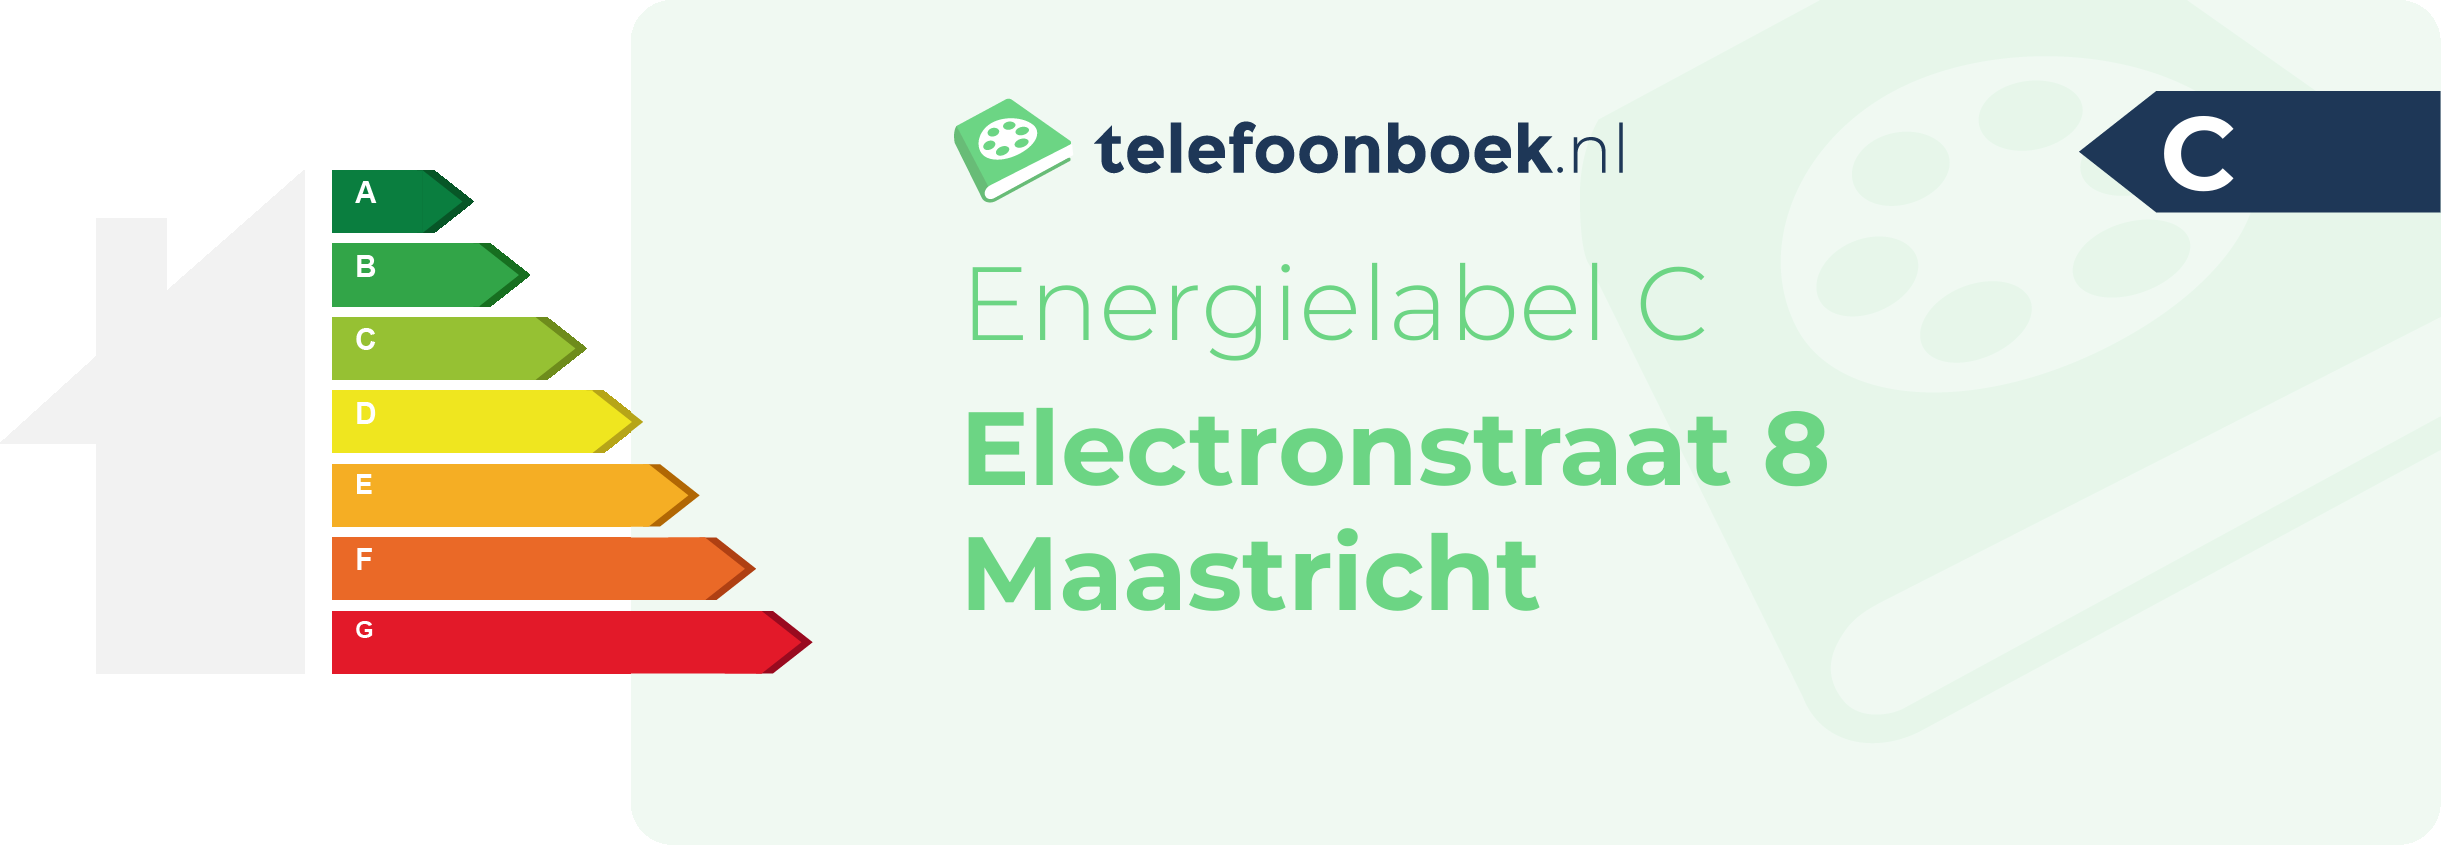 Energielabel Electronstraat 8 Maastricht